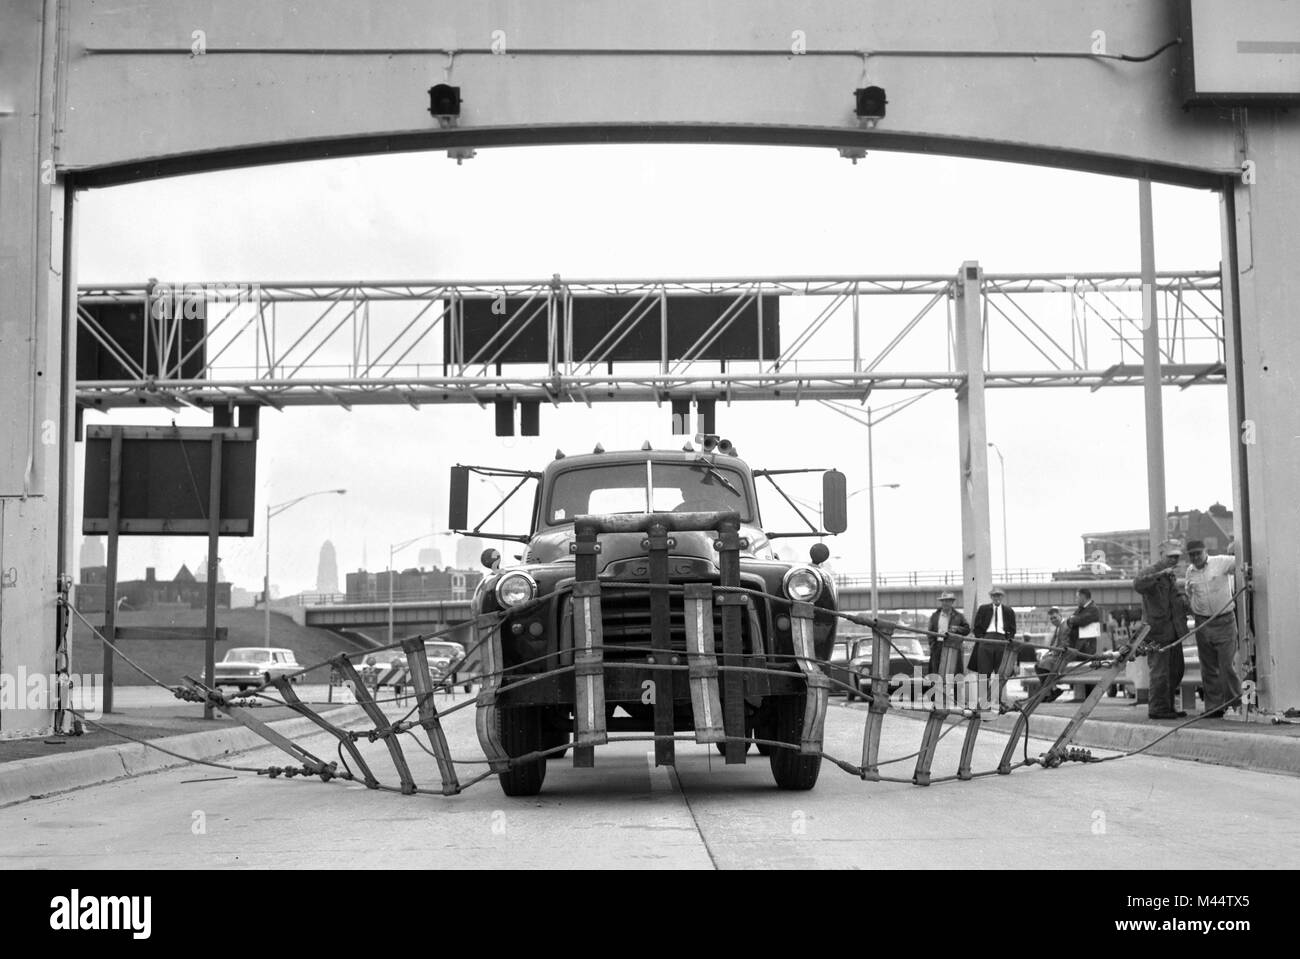 La démonstration de la sûreté d'une manière fausse barricade pour le trafic de la voie réversible Kennedy Expressway à Chicago, ca. 1960. Banque D'Images